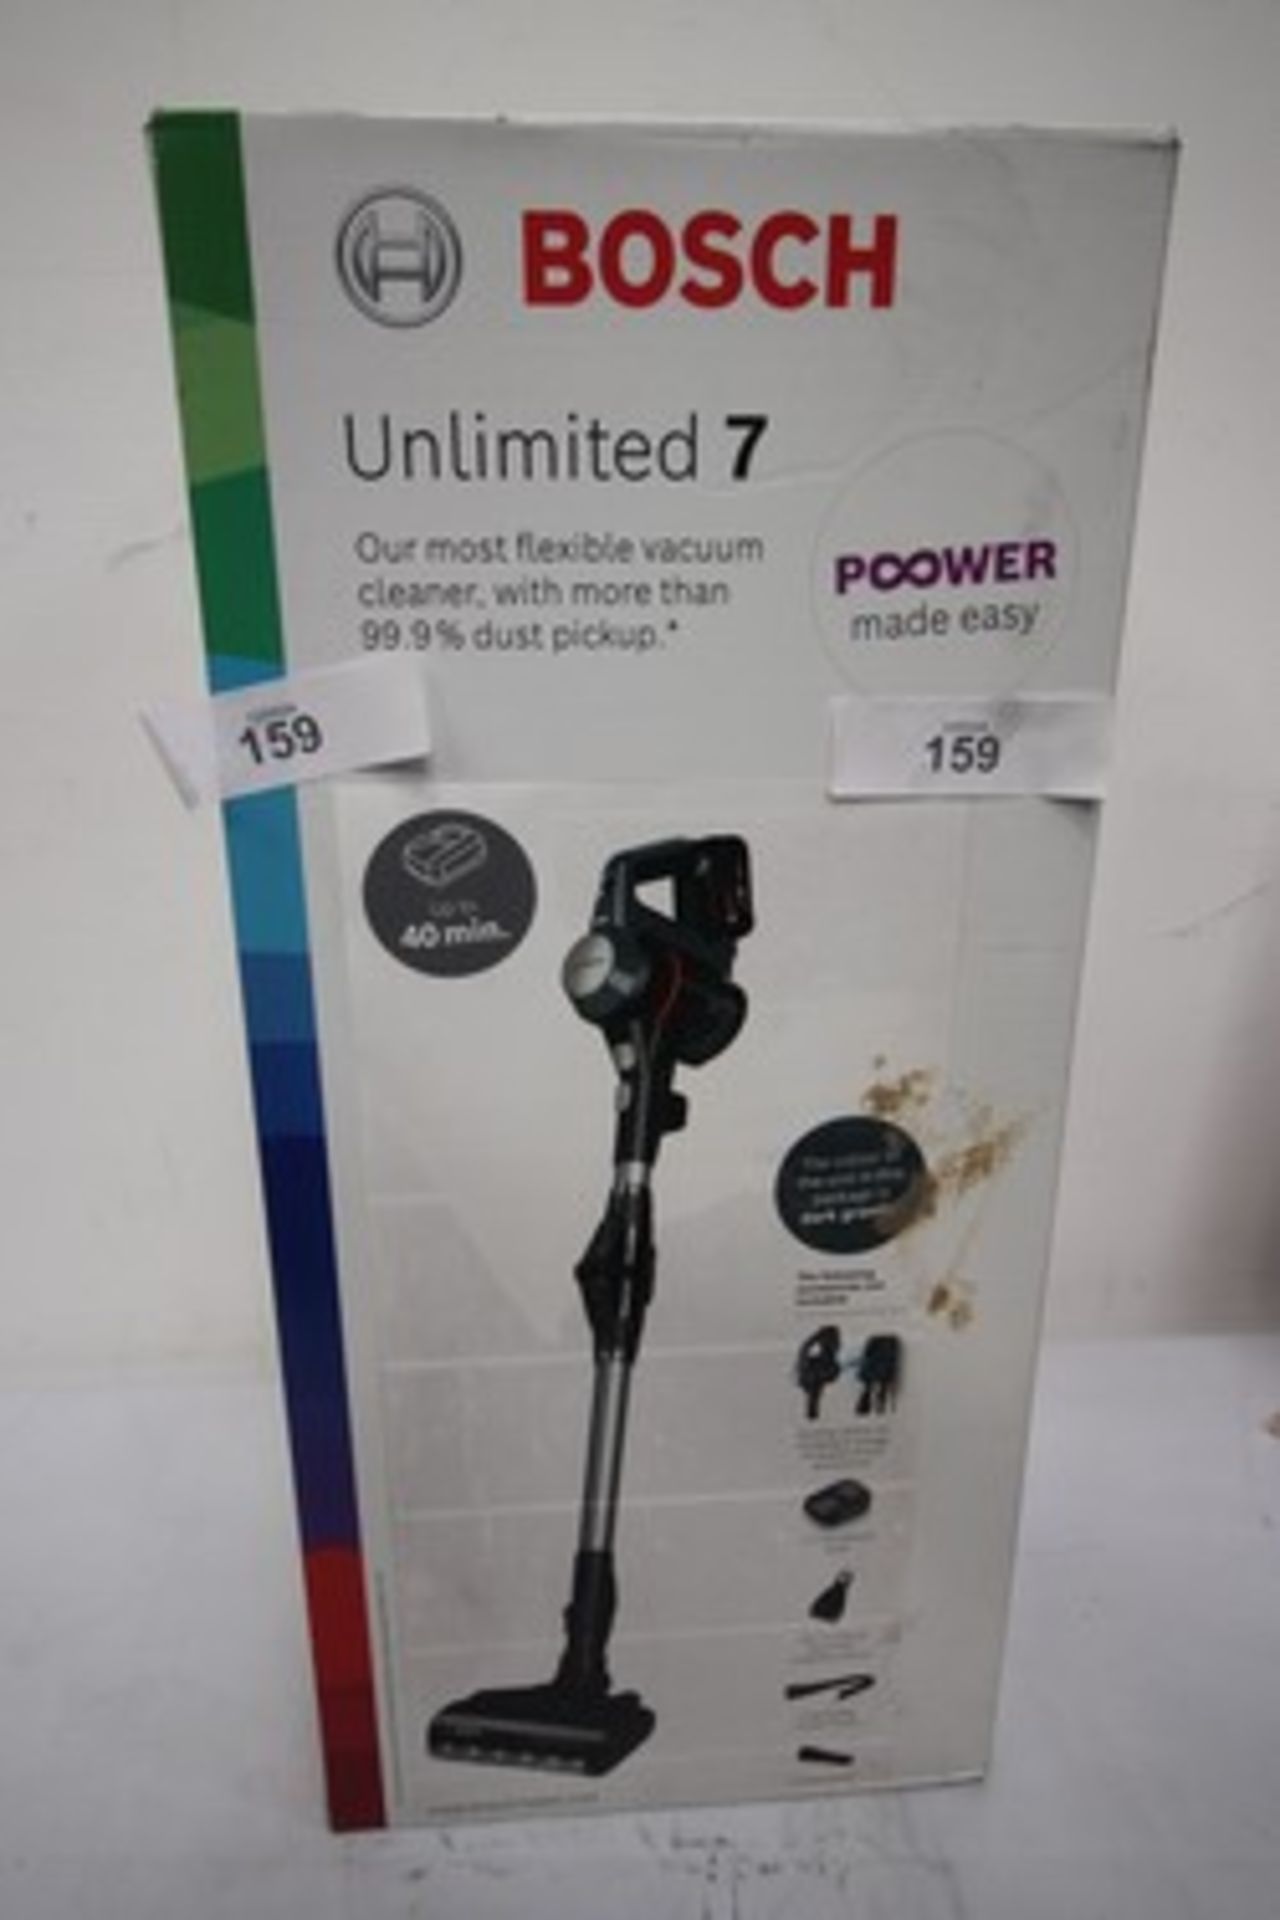 1 x Bosch unlimited 7 cordless vacuum, Model BCS711GB - New (ES2)